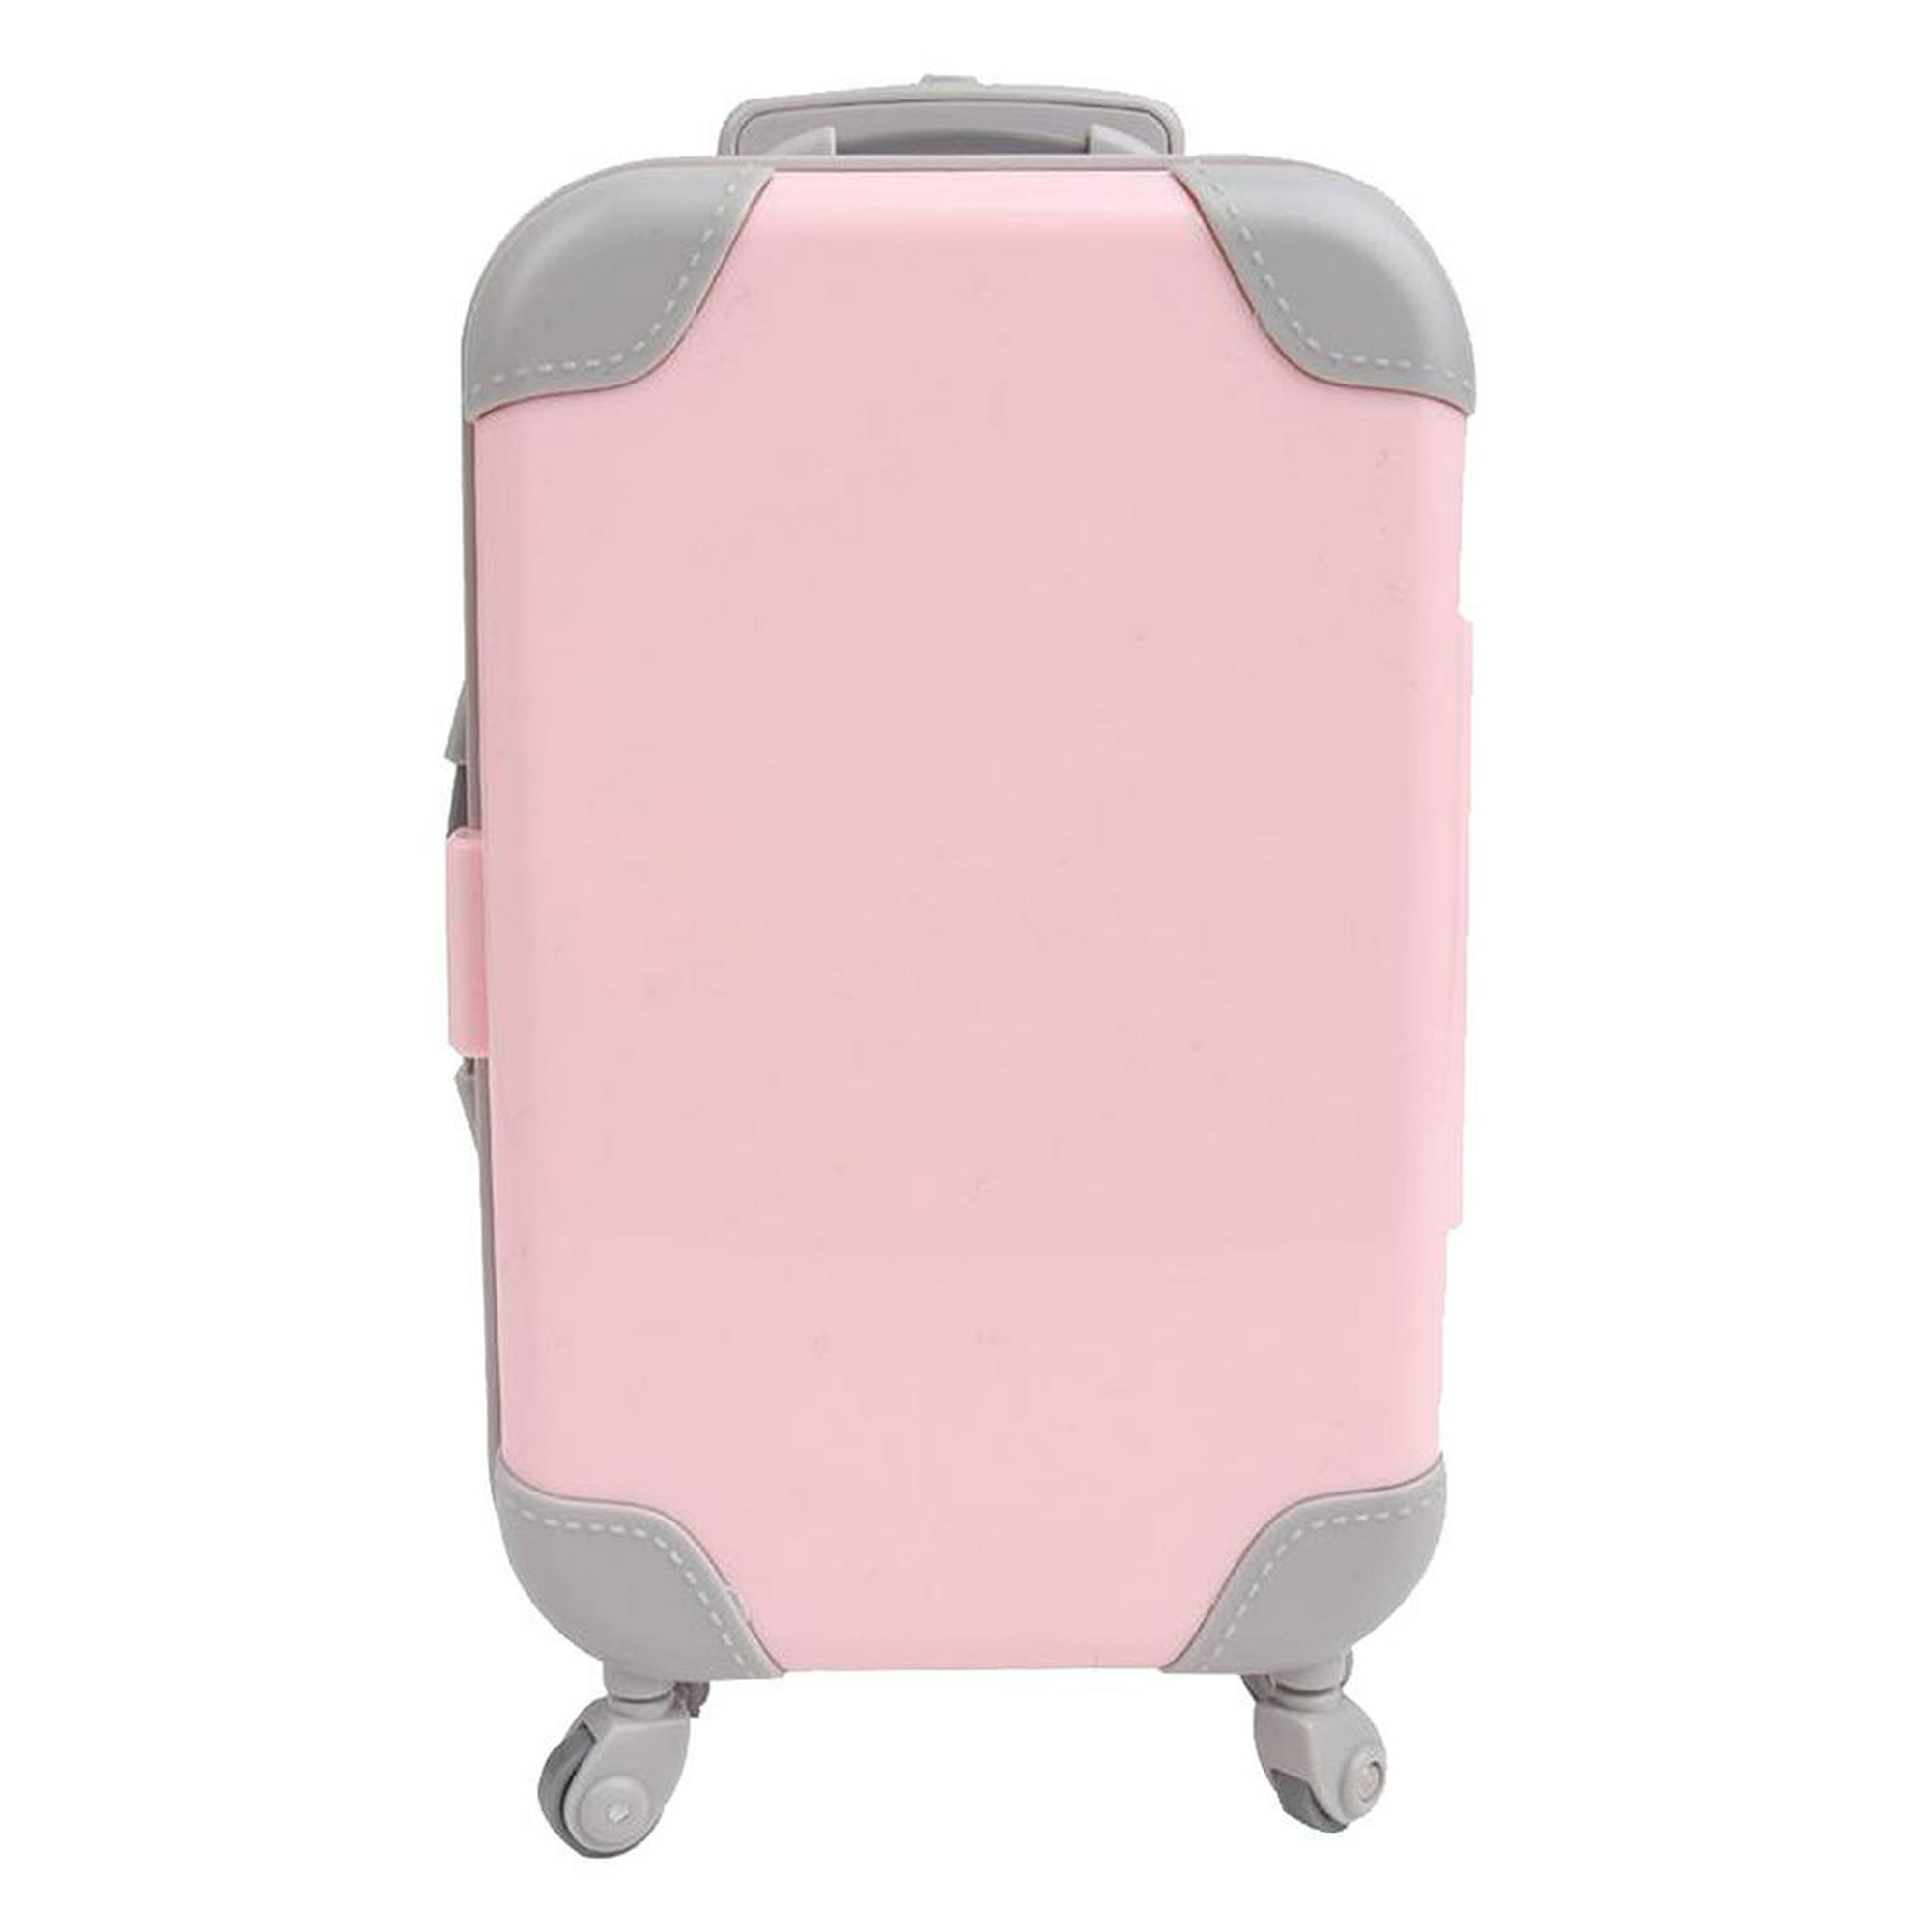 Maleta de viaje de moda con caja de equipaje para muñecas de niña